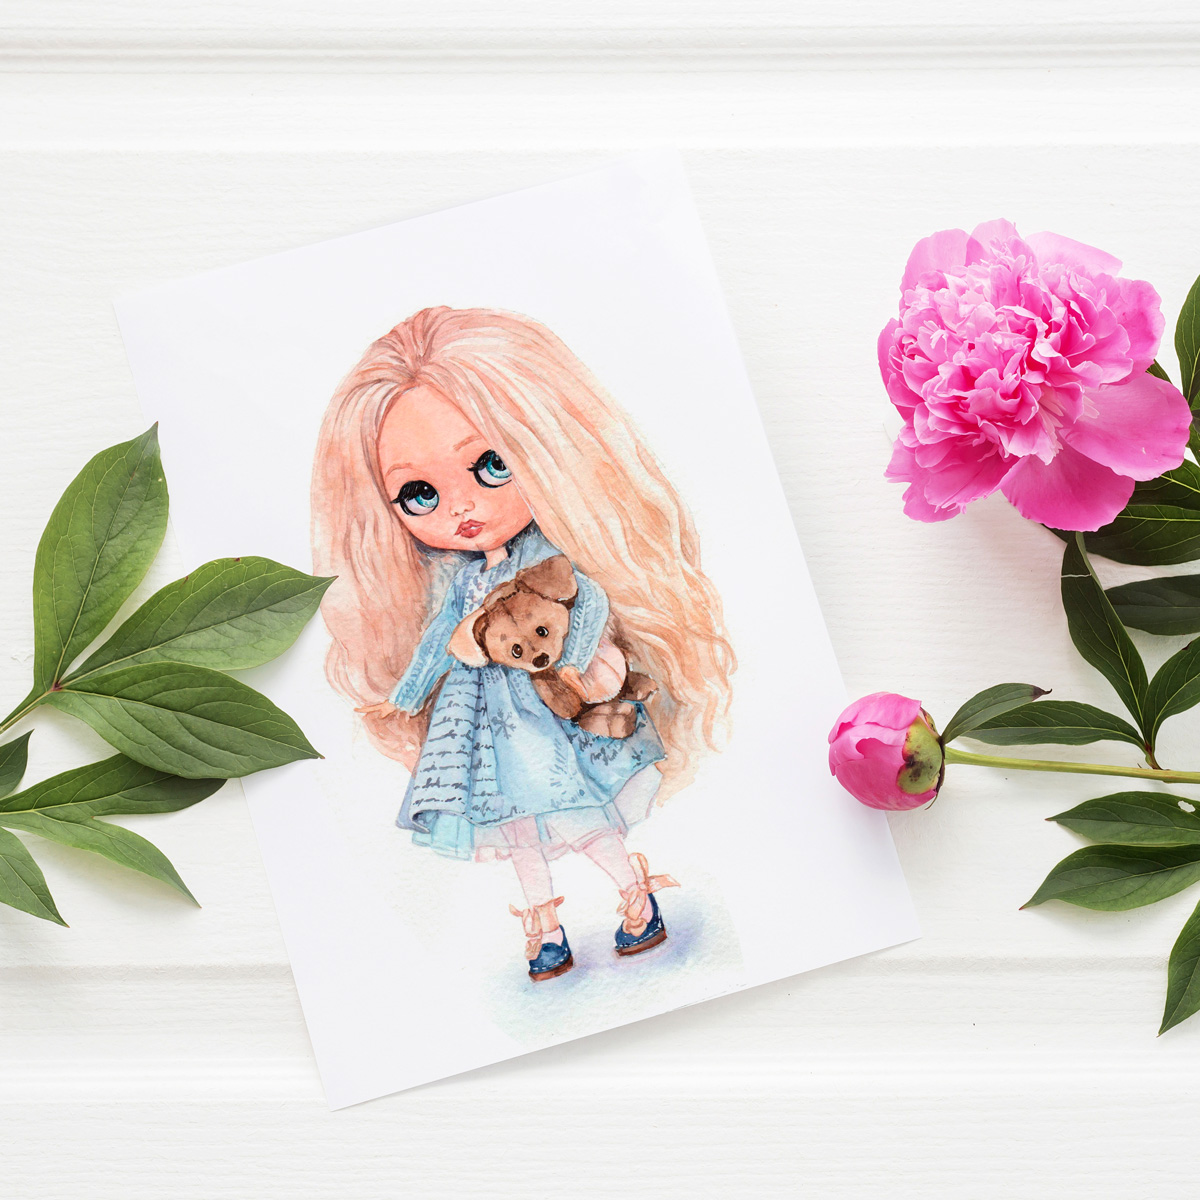 акварель вітальну листівку з лялькою в блайз стилі в синій сукні